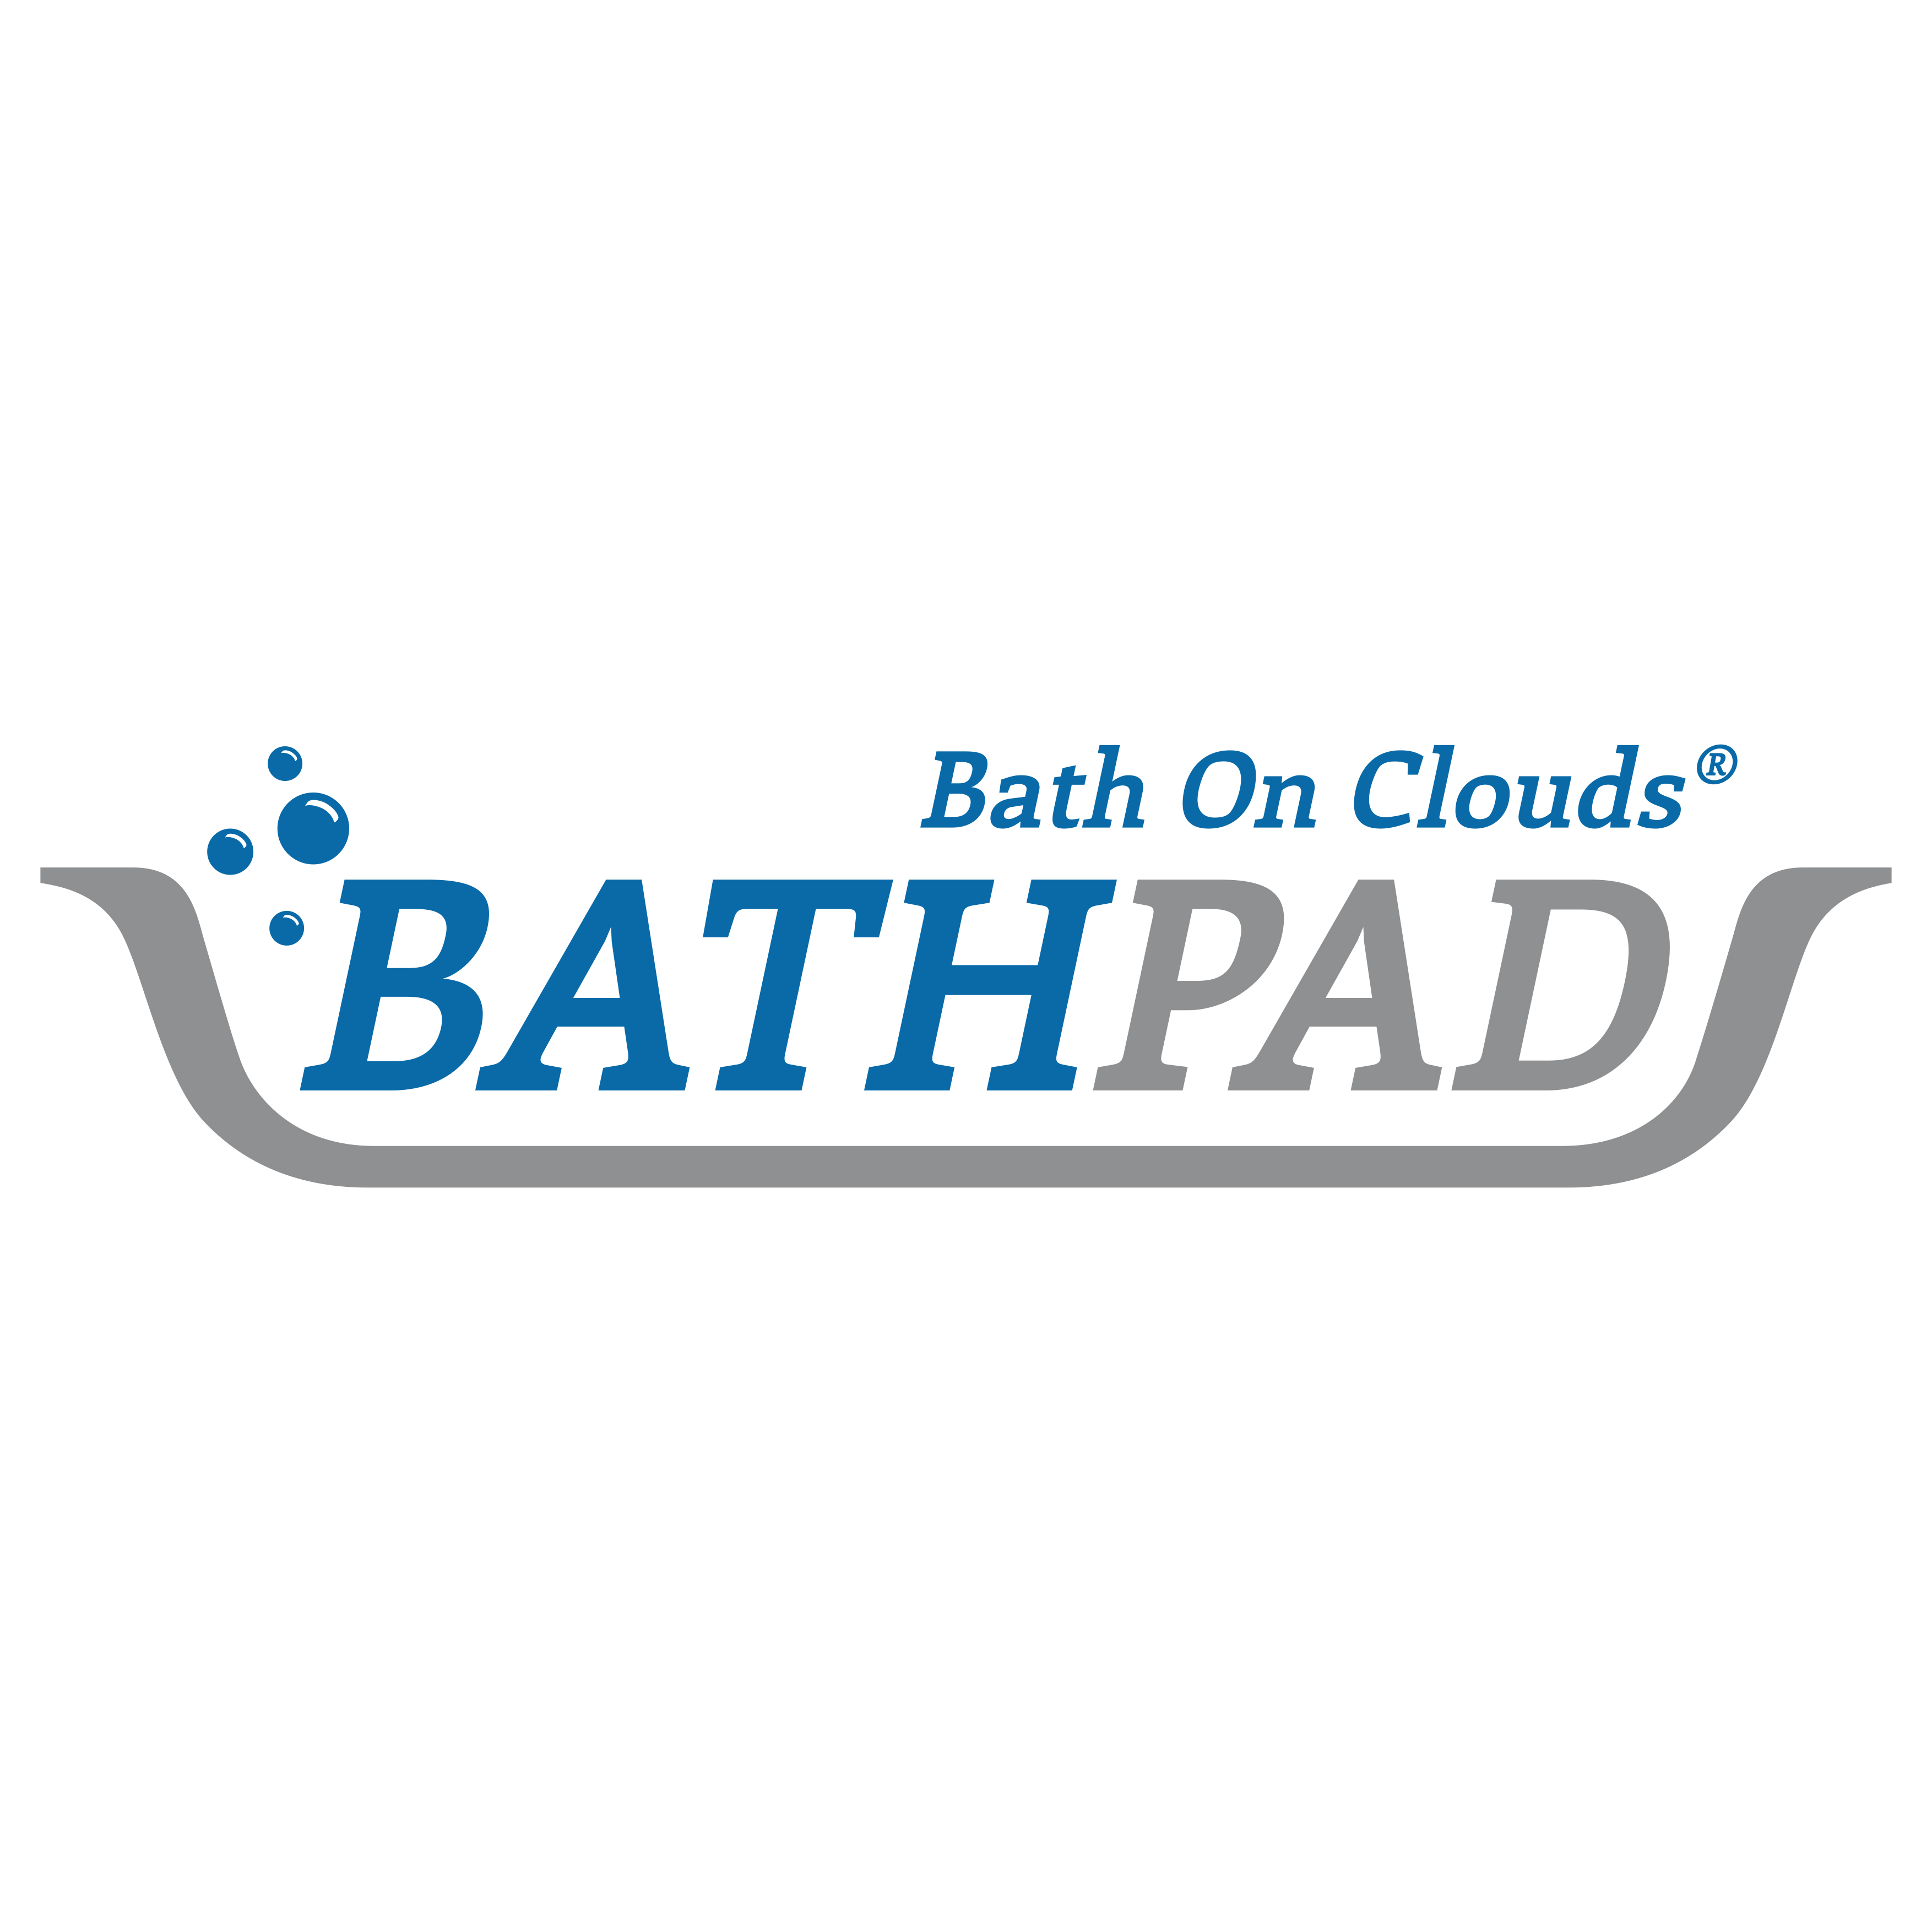 Bath On Clouds